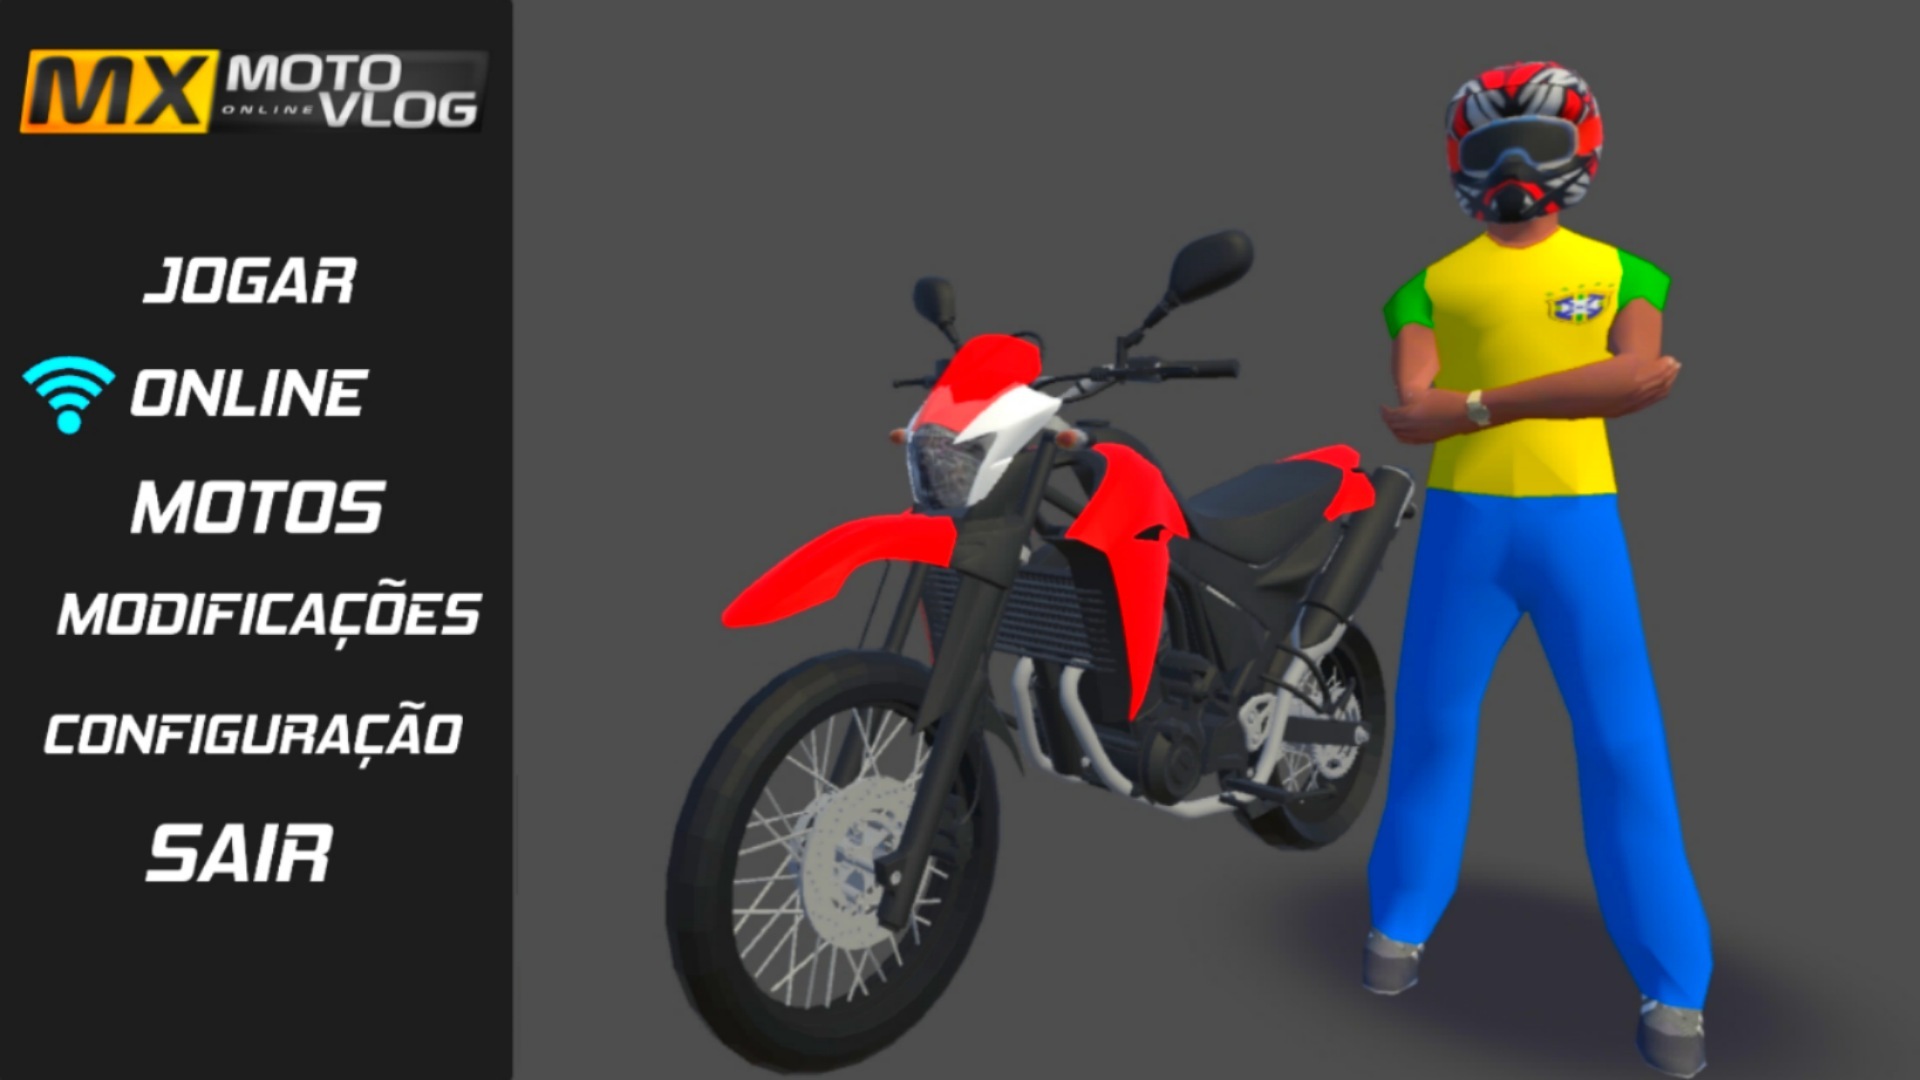 Baixar & jogar Bike Rider : Moto Grau no PC & Mac (Emulador)